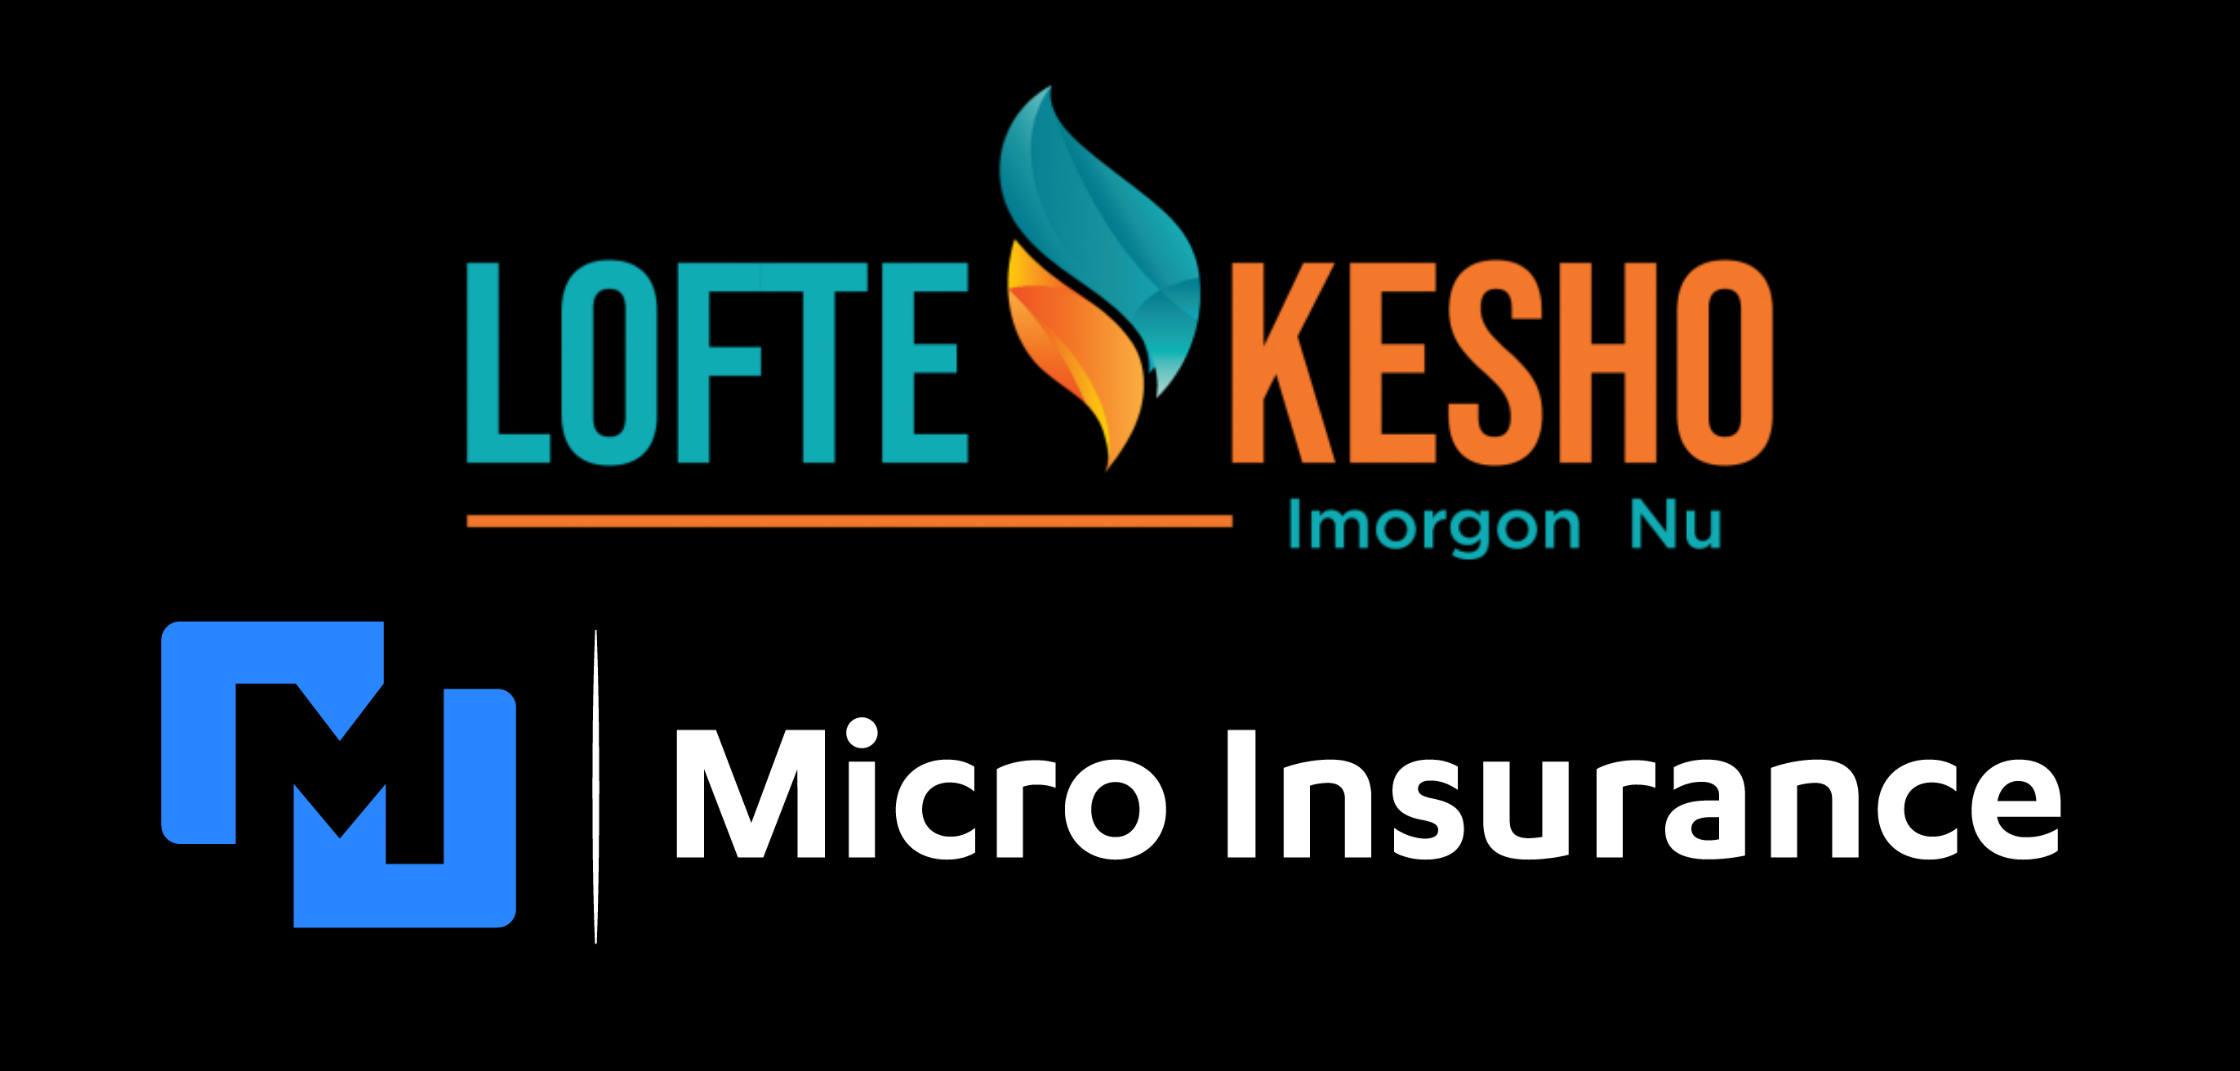 Lofte Kesho x Micro Insurance Company Partner